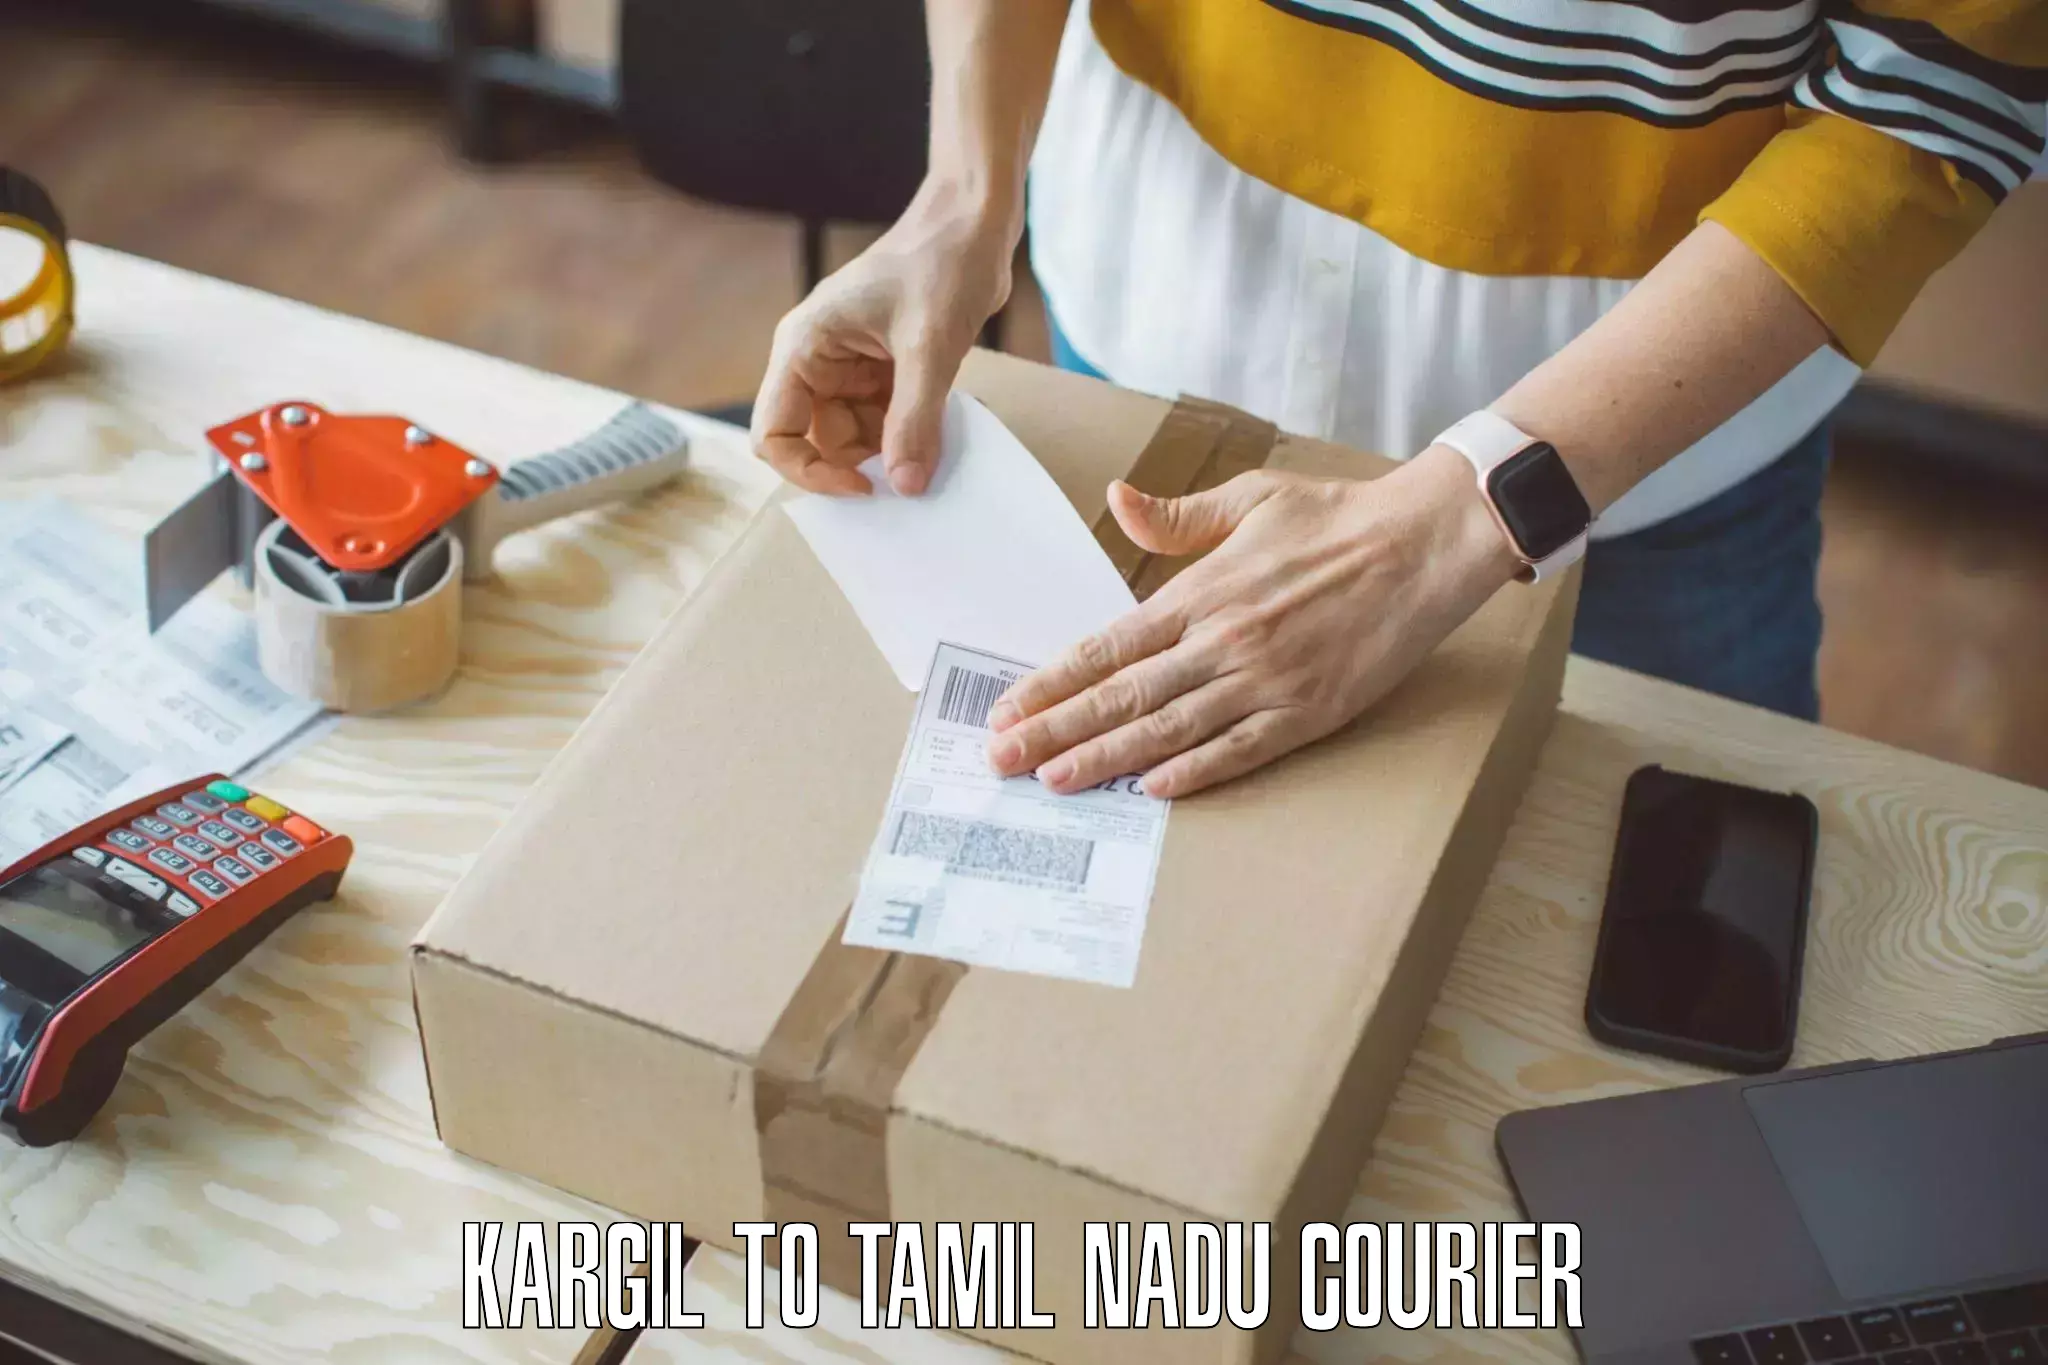 Home goods moving company Kargil to Tirukalukundram